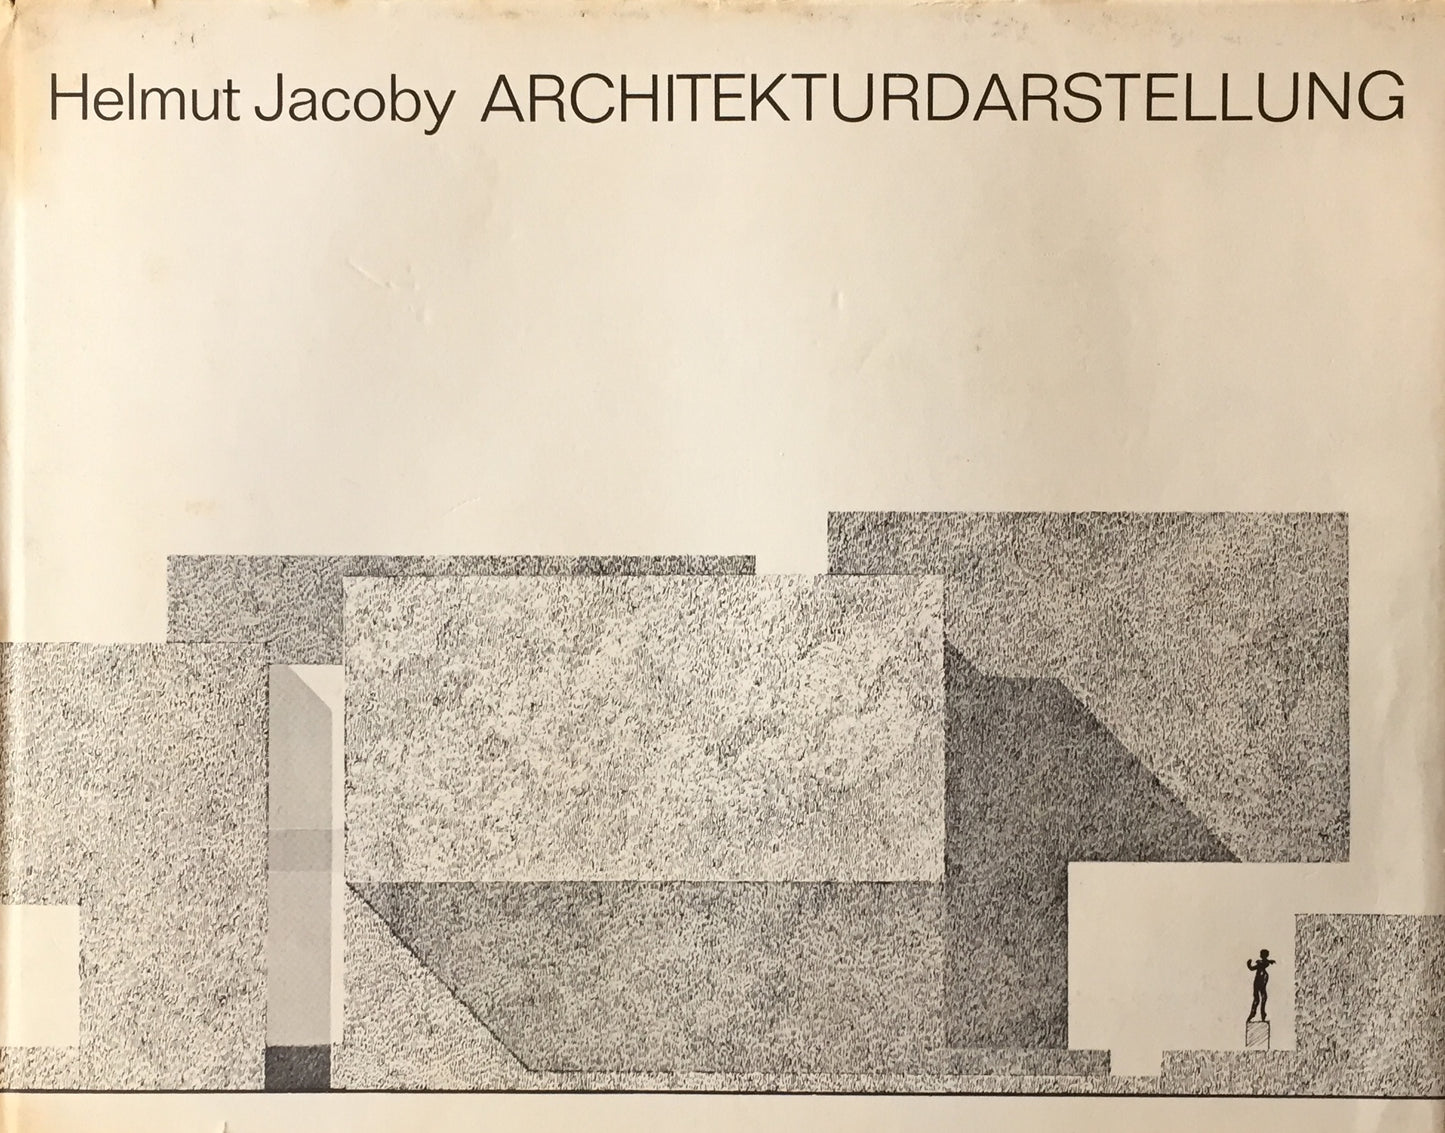 Architekturdarstellung　Helmut Jacoby　ヘルムート・ヤコビイ